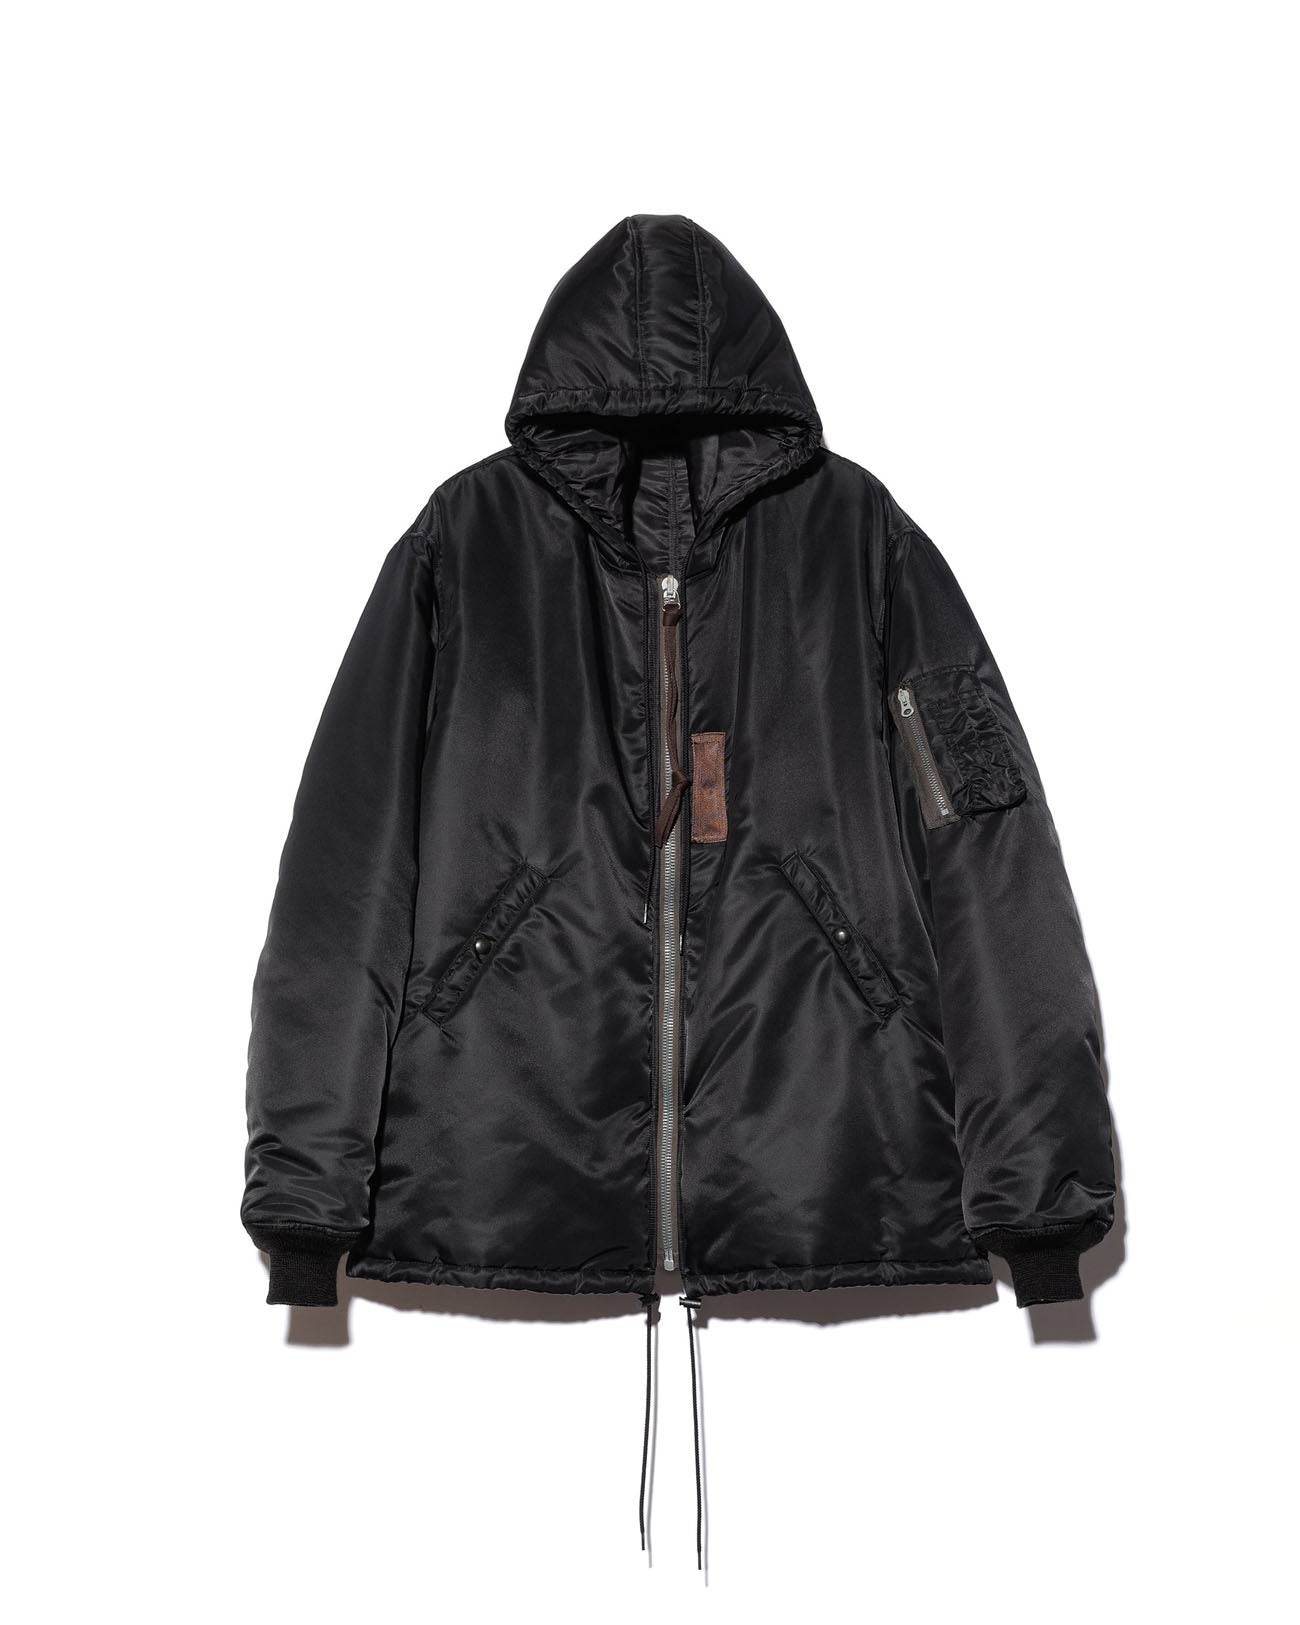 MA-1 hooded jacket